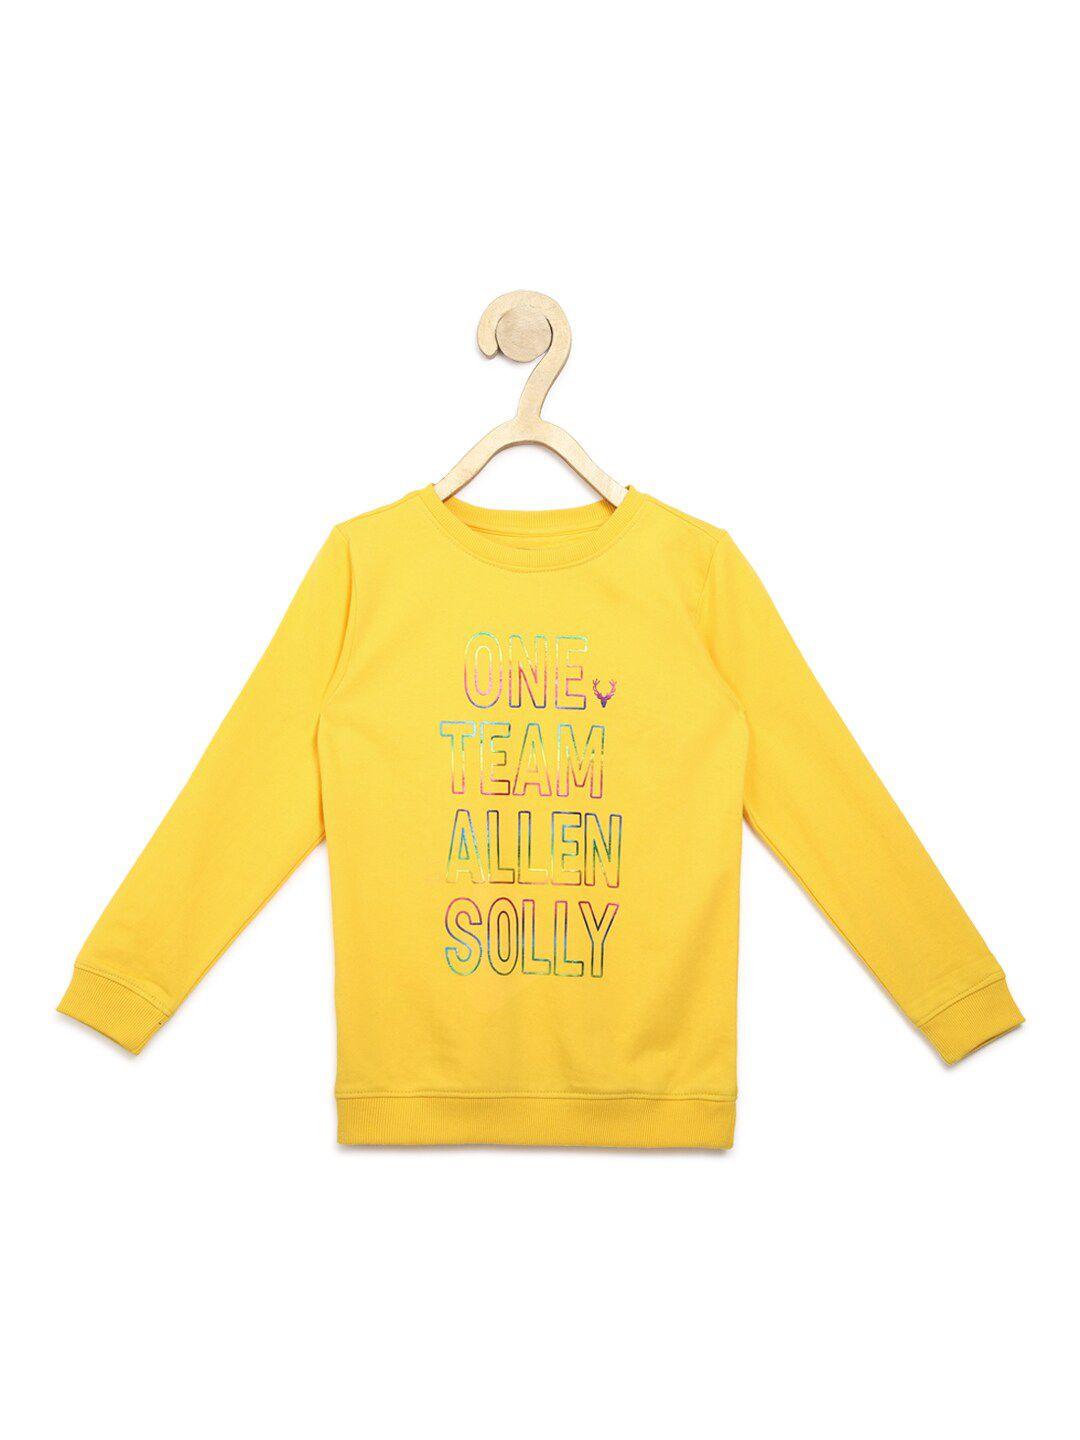 allen solly junior boys yellow printed sweatshirt